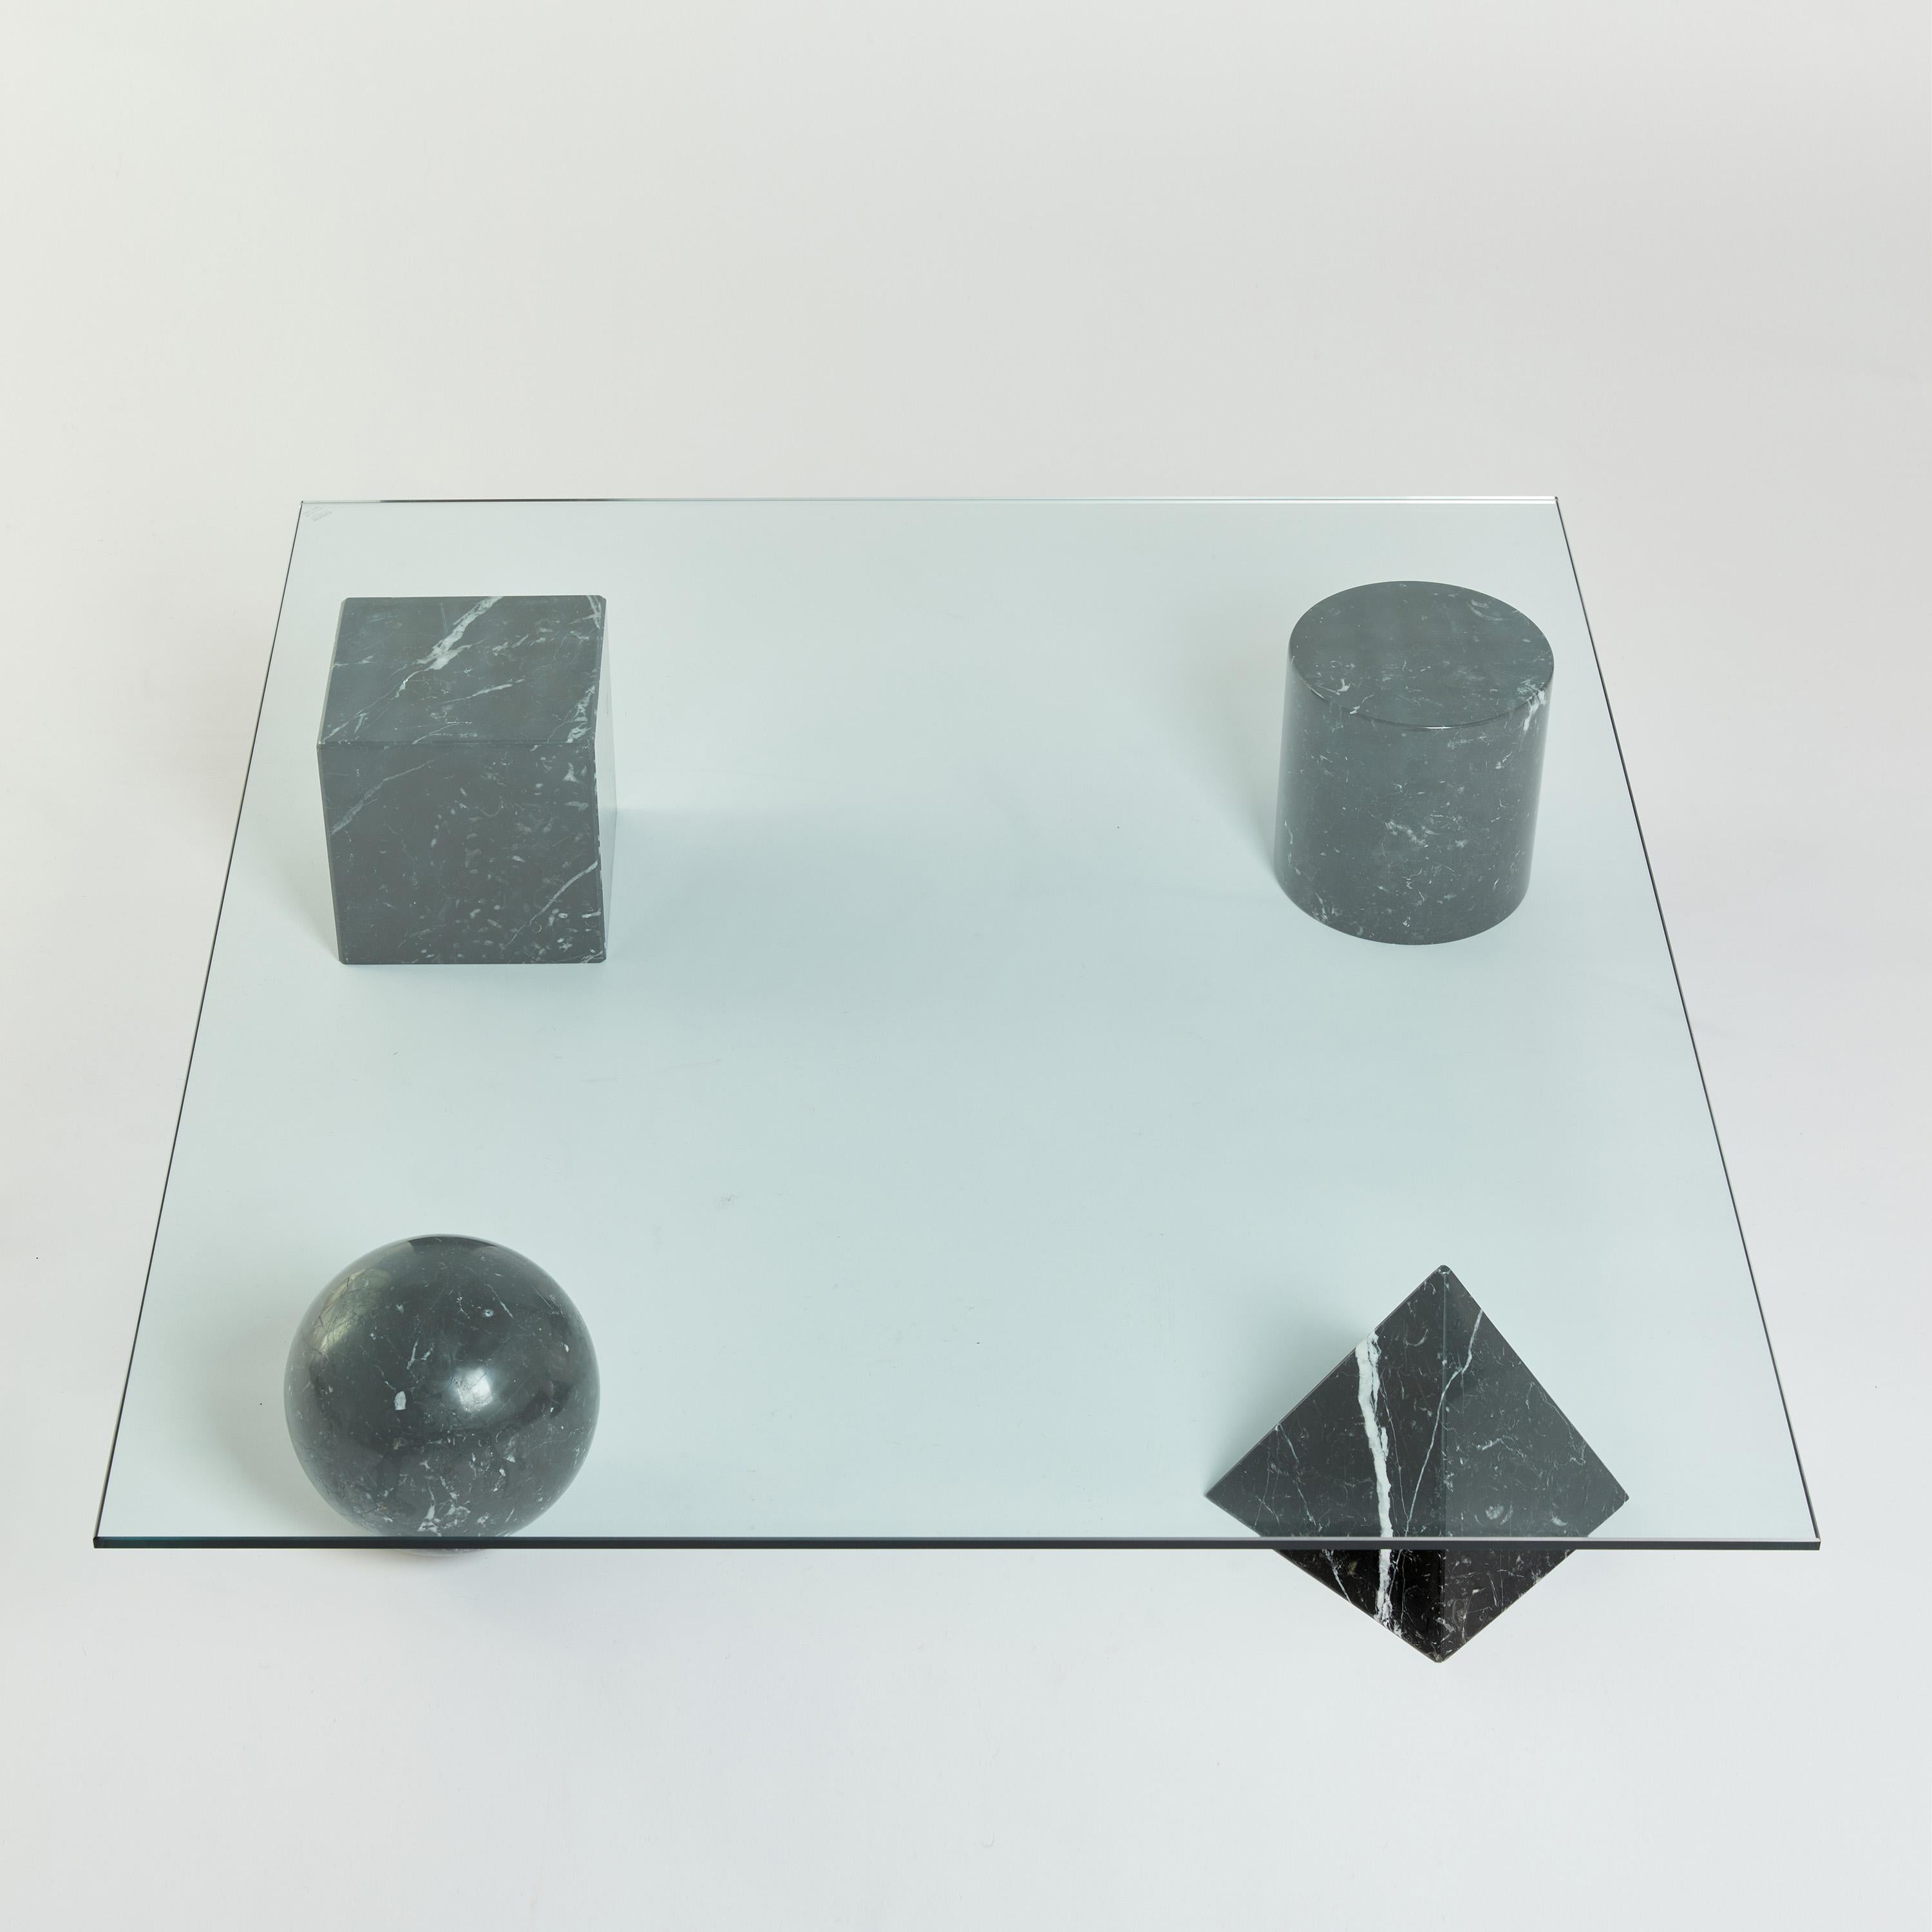 Black Marble Metafora Coffee Table by Massimo & Lella Vignelli for Casigliani 1